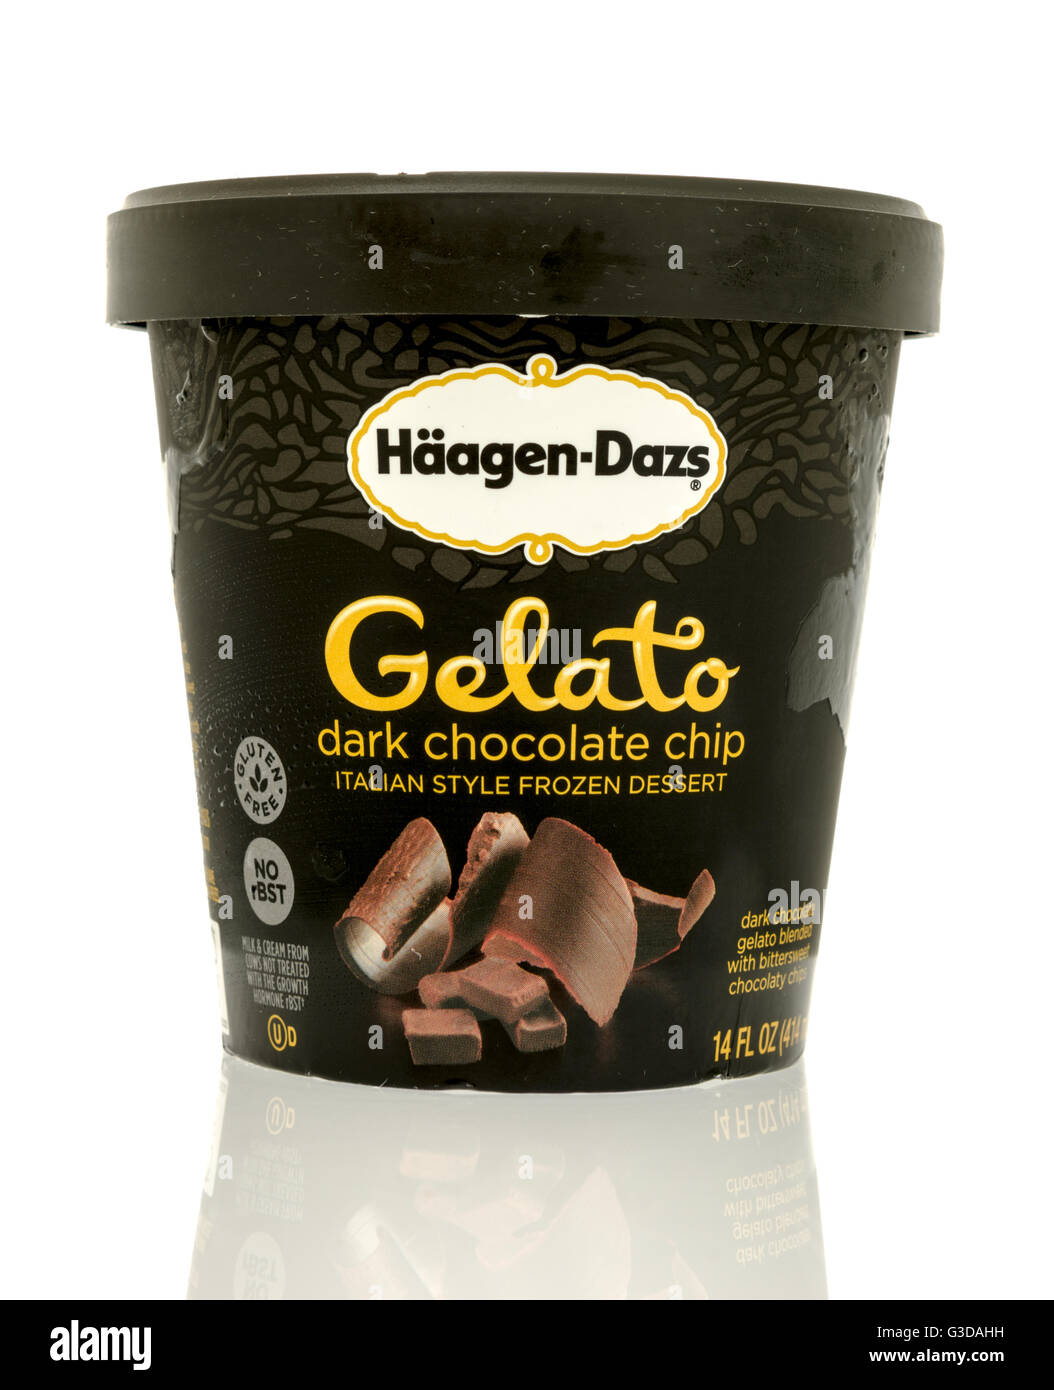 Winneconne, Wisconsin - 7. Juni 2016: Container Hageen Dazs Eis in Gelato dark chocolate Chip Geschmack auf einem isolierten Hintergrund Stockfoto